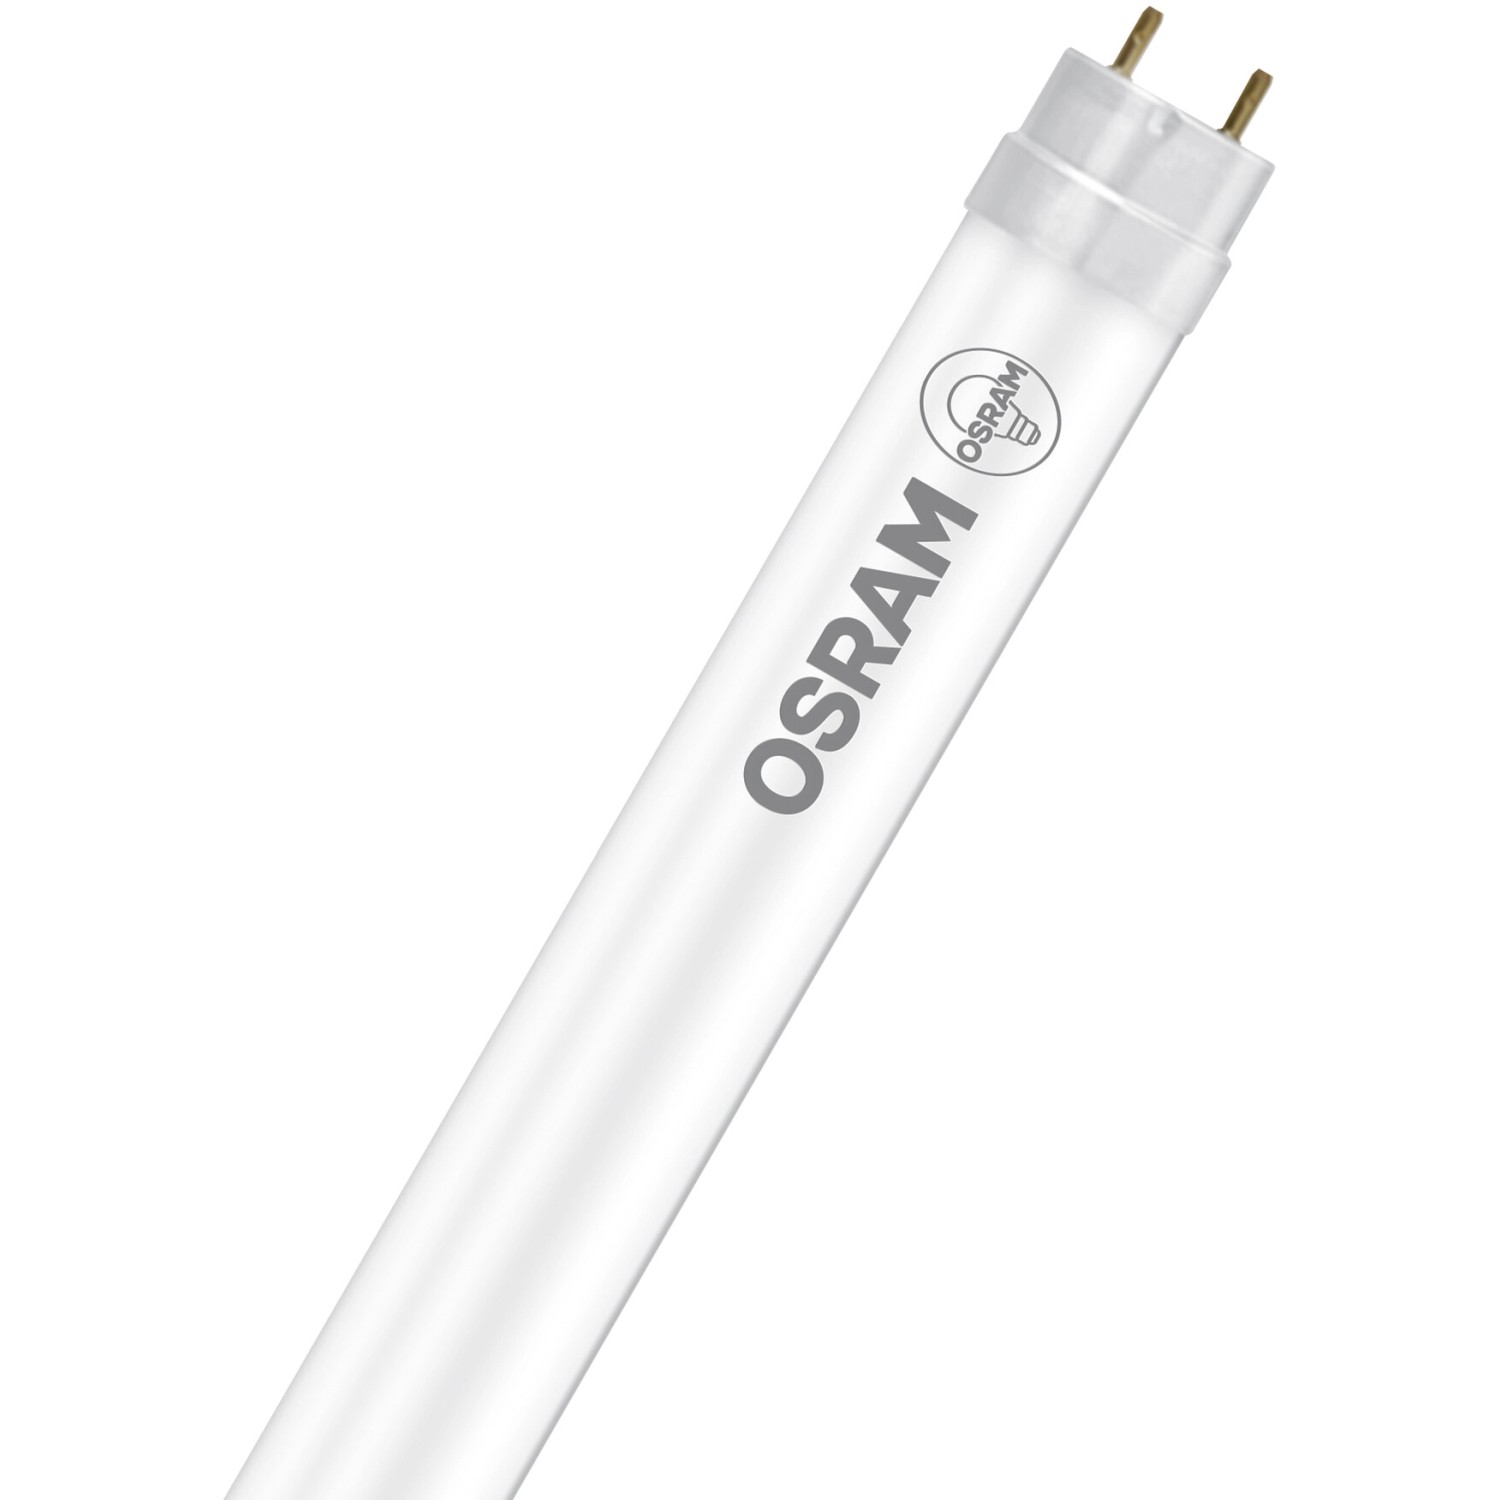 Osram LED-Leuchtstofflampen G13 Röhre 5,4 W 585 lm 45,1 cm x 2,7 cm Warmweiß